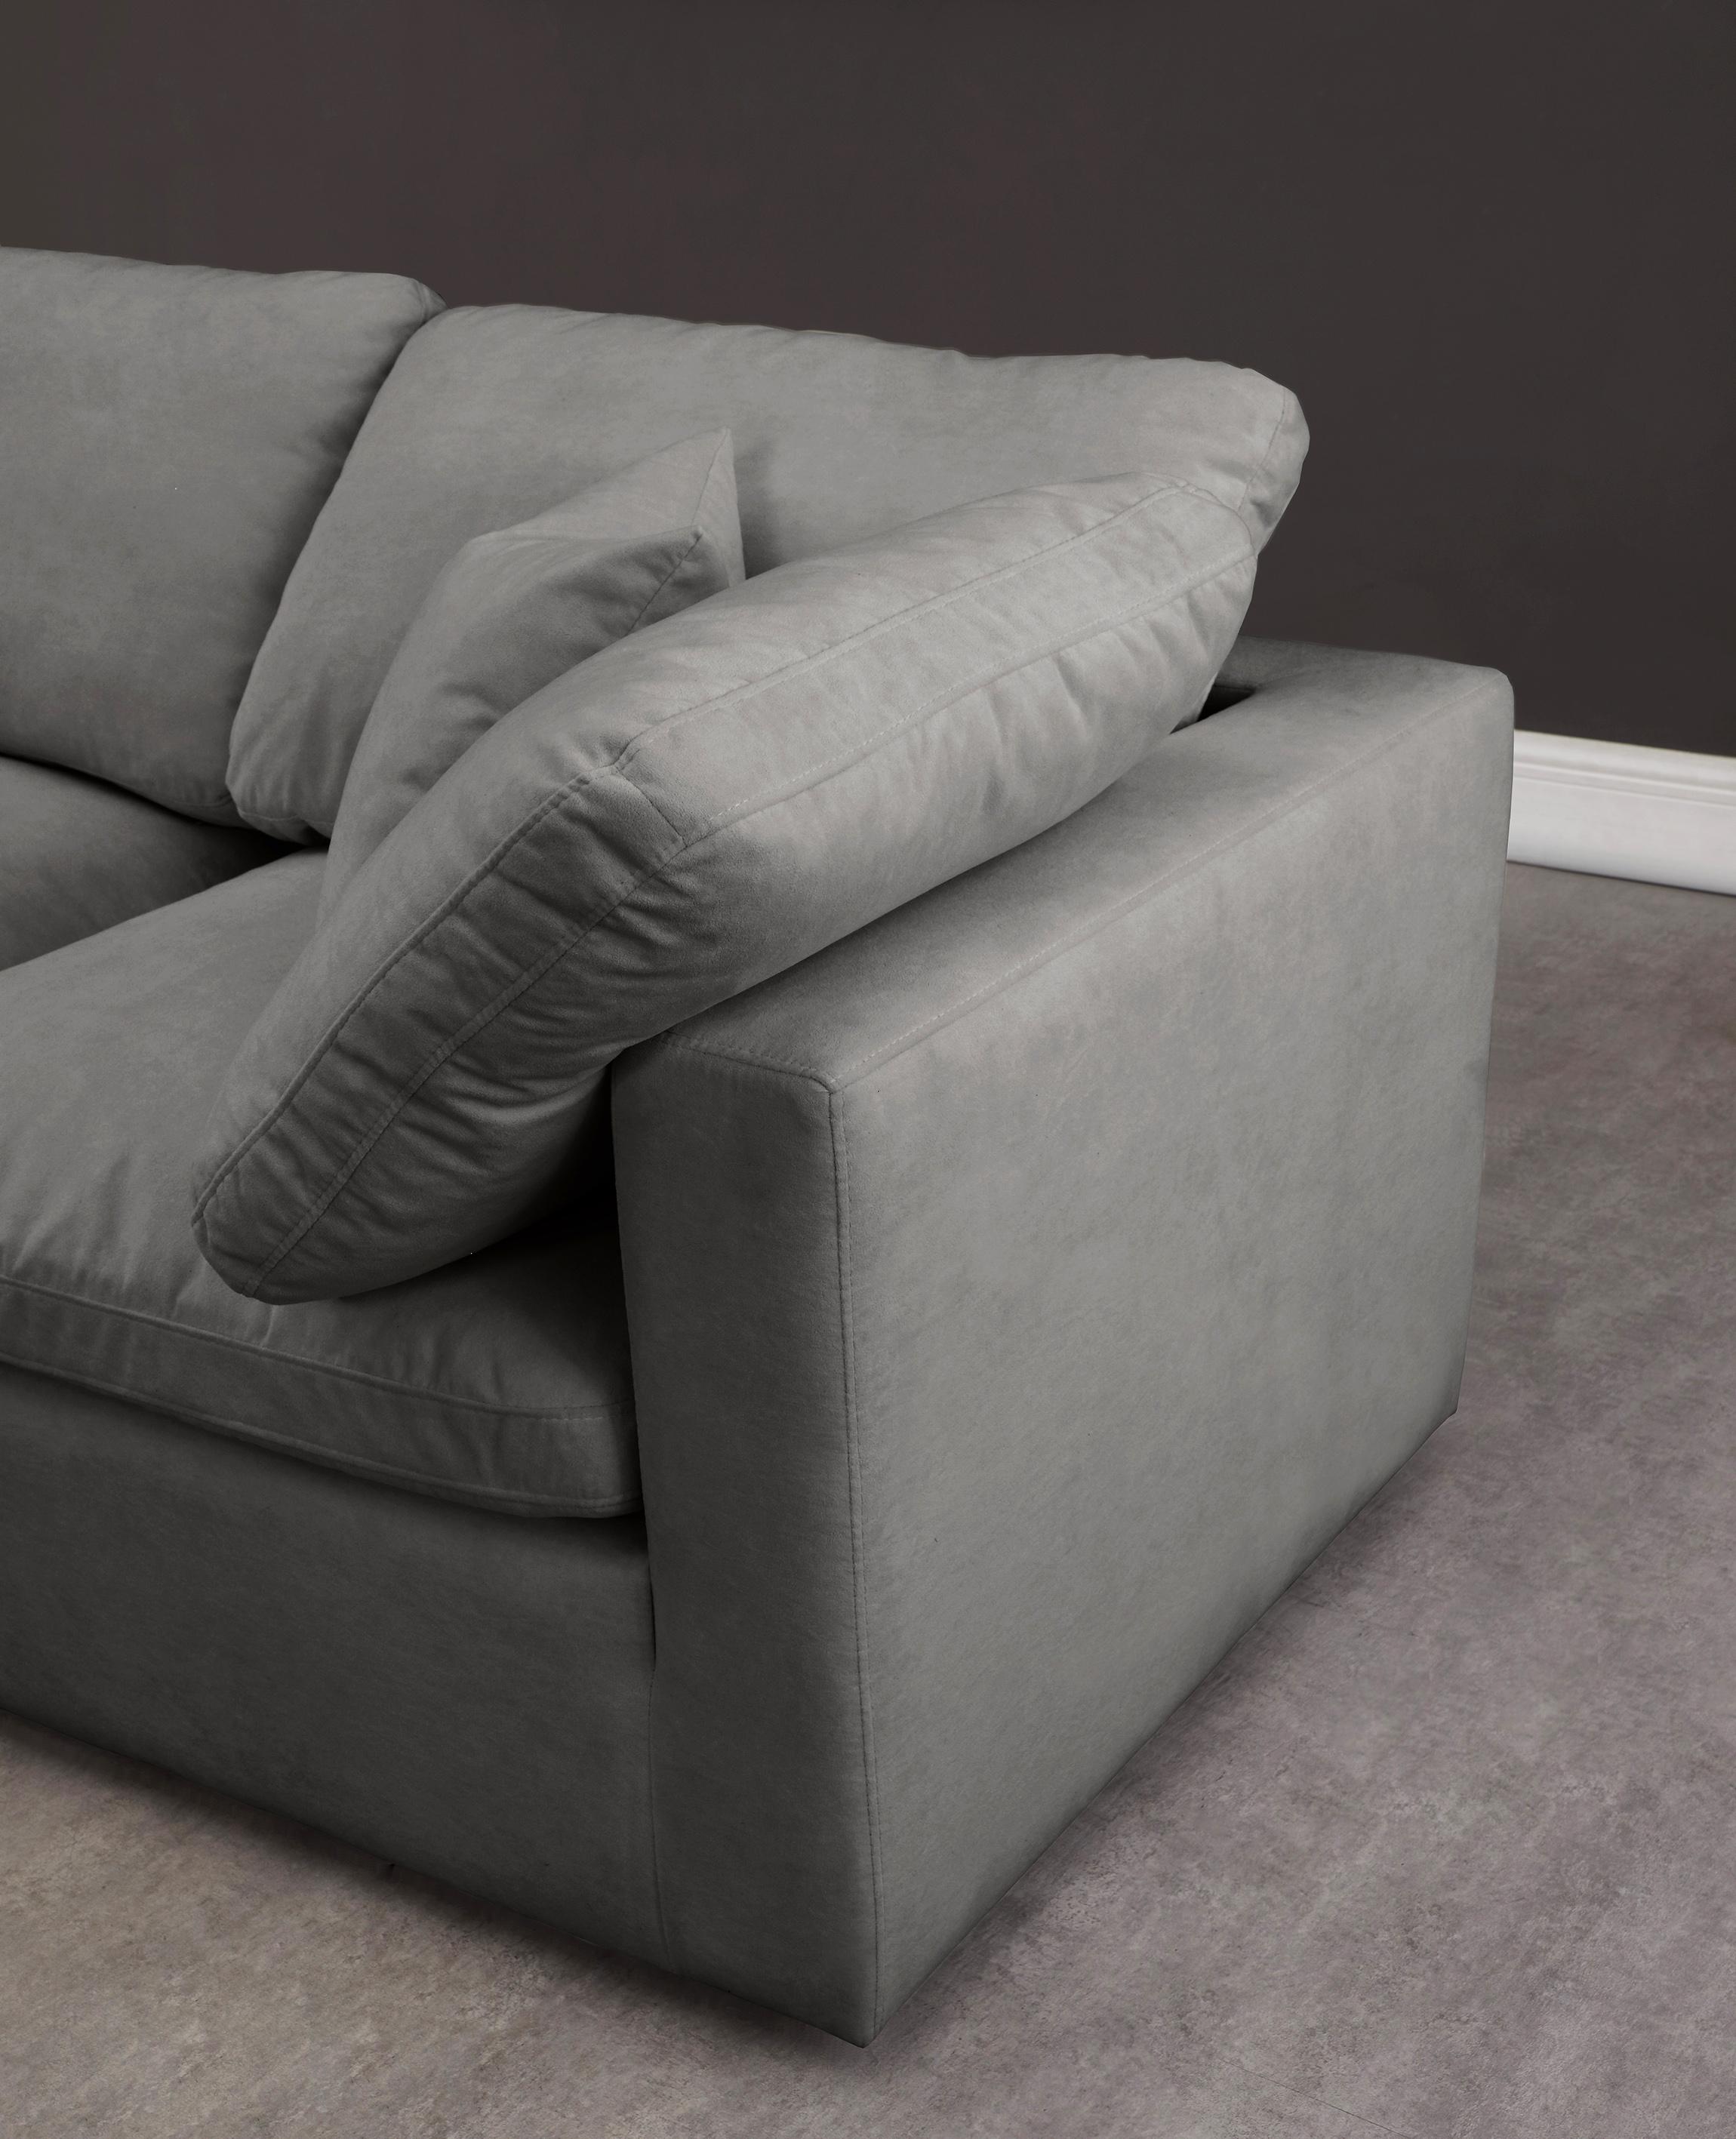 

    
602Grey-Sec6A Meridian Furniture Modular Sectional Sofa
